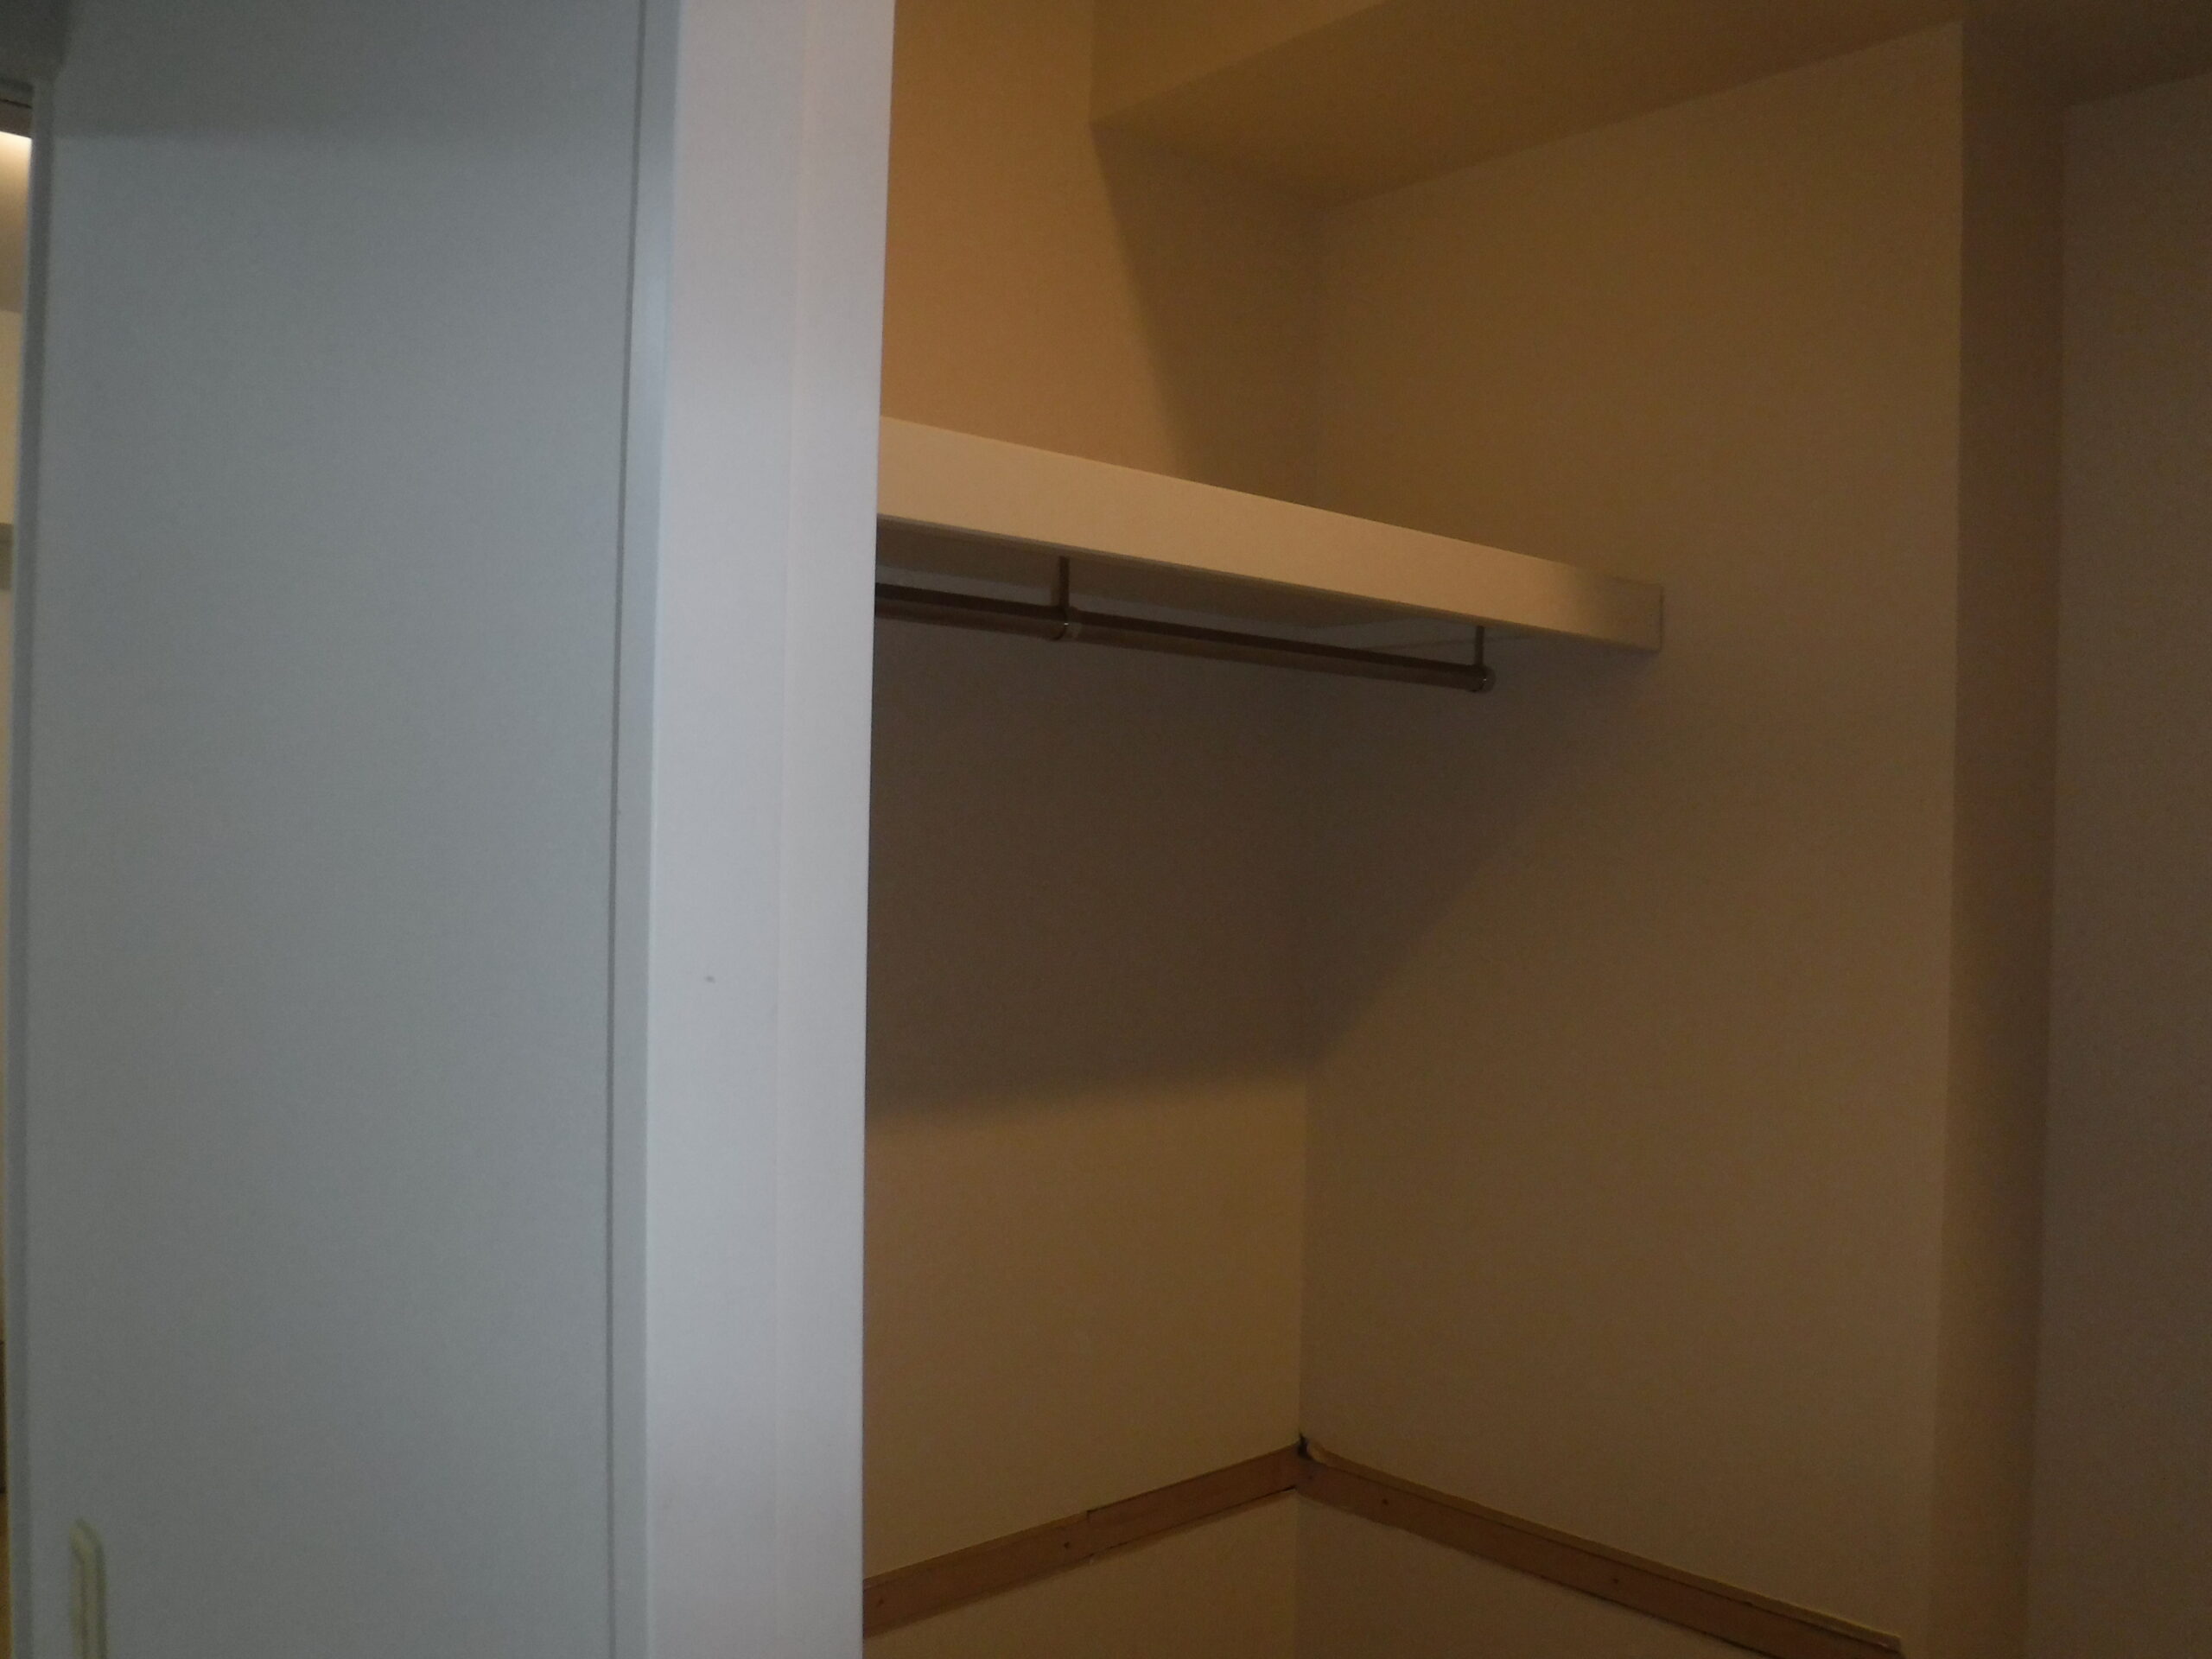 千葉市中央区U様邸で押入枕棚と可動棚を取付ました。